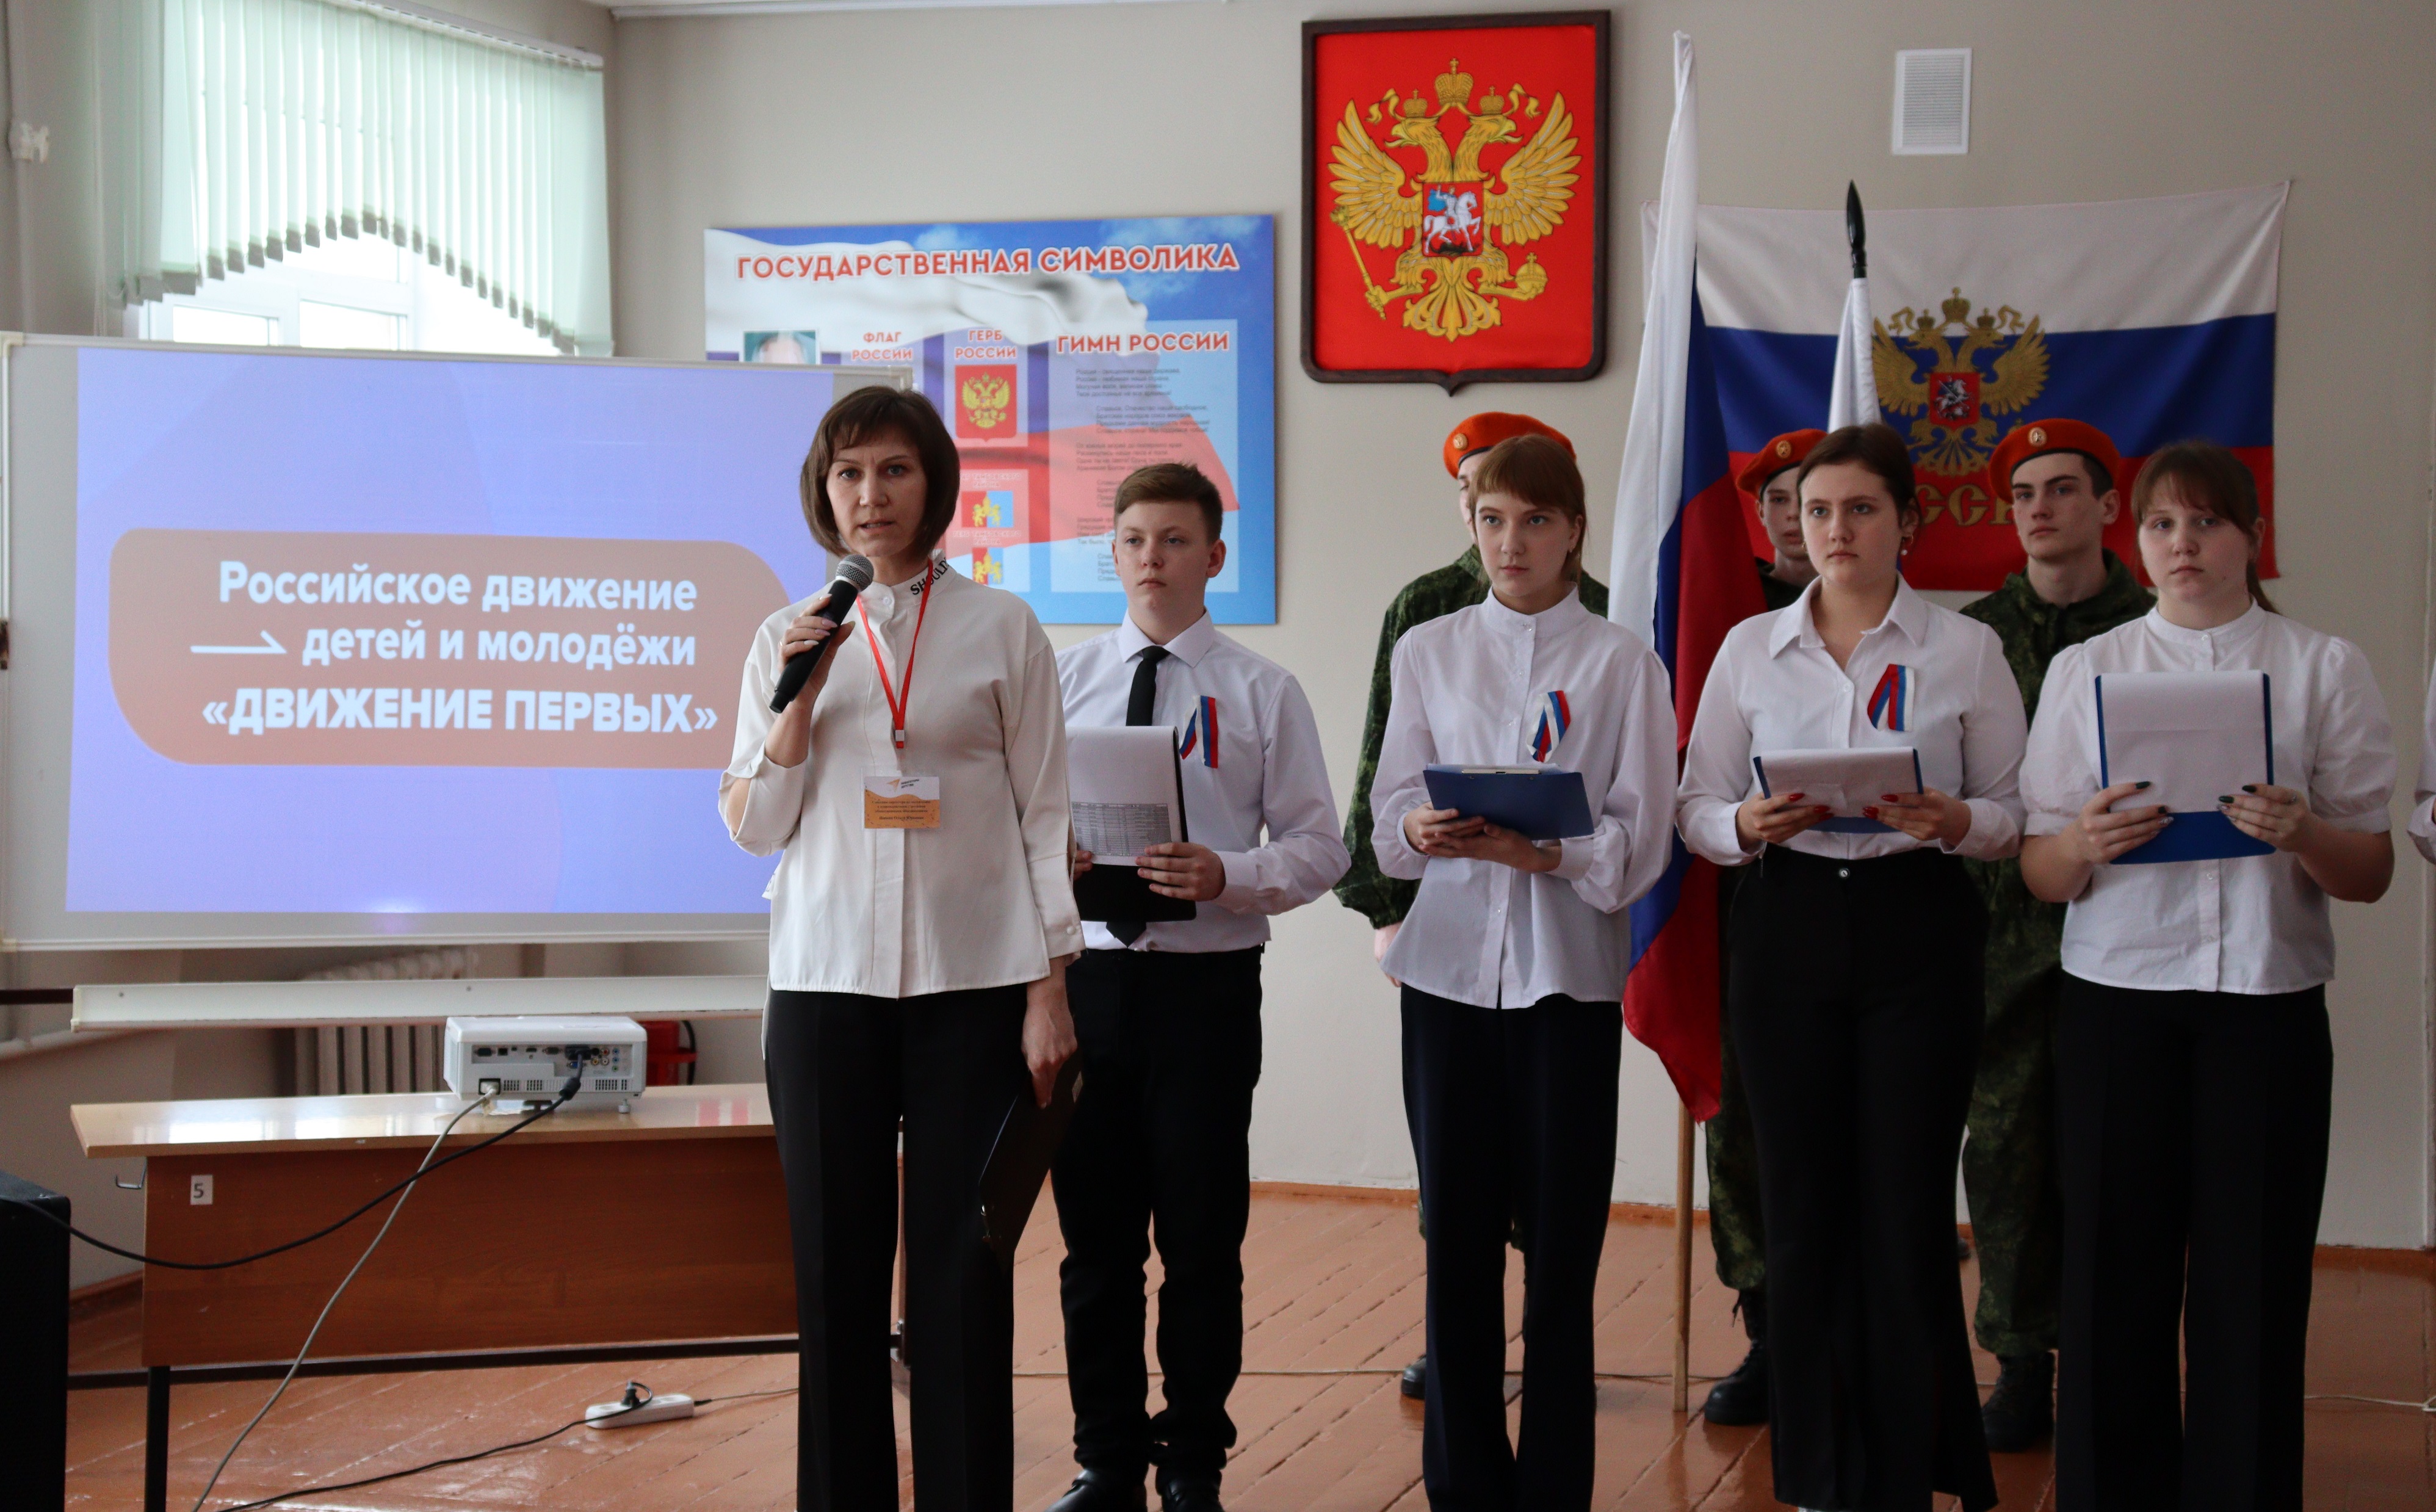 Открытие первичного  отделения Российского движения детей и молодежи «Движение первых».